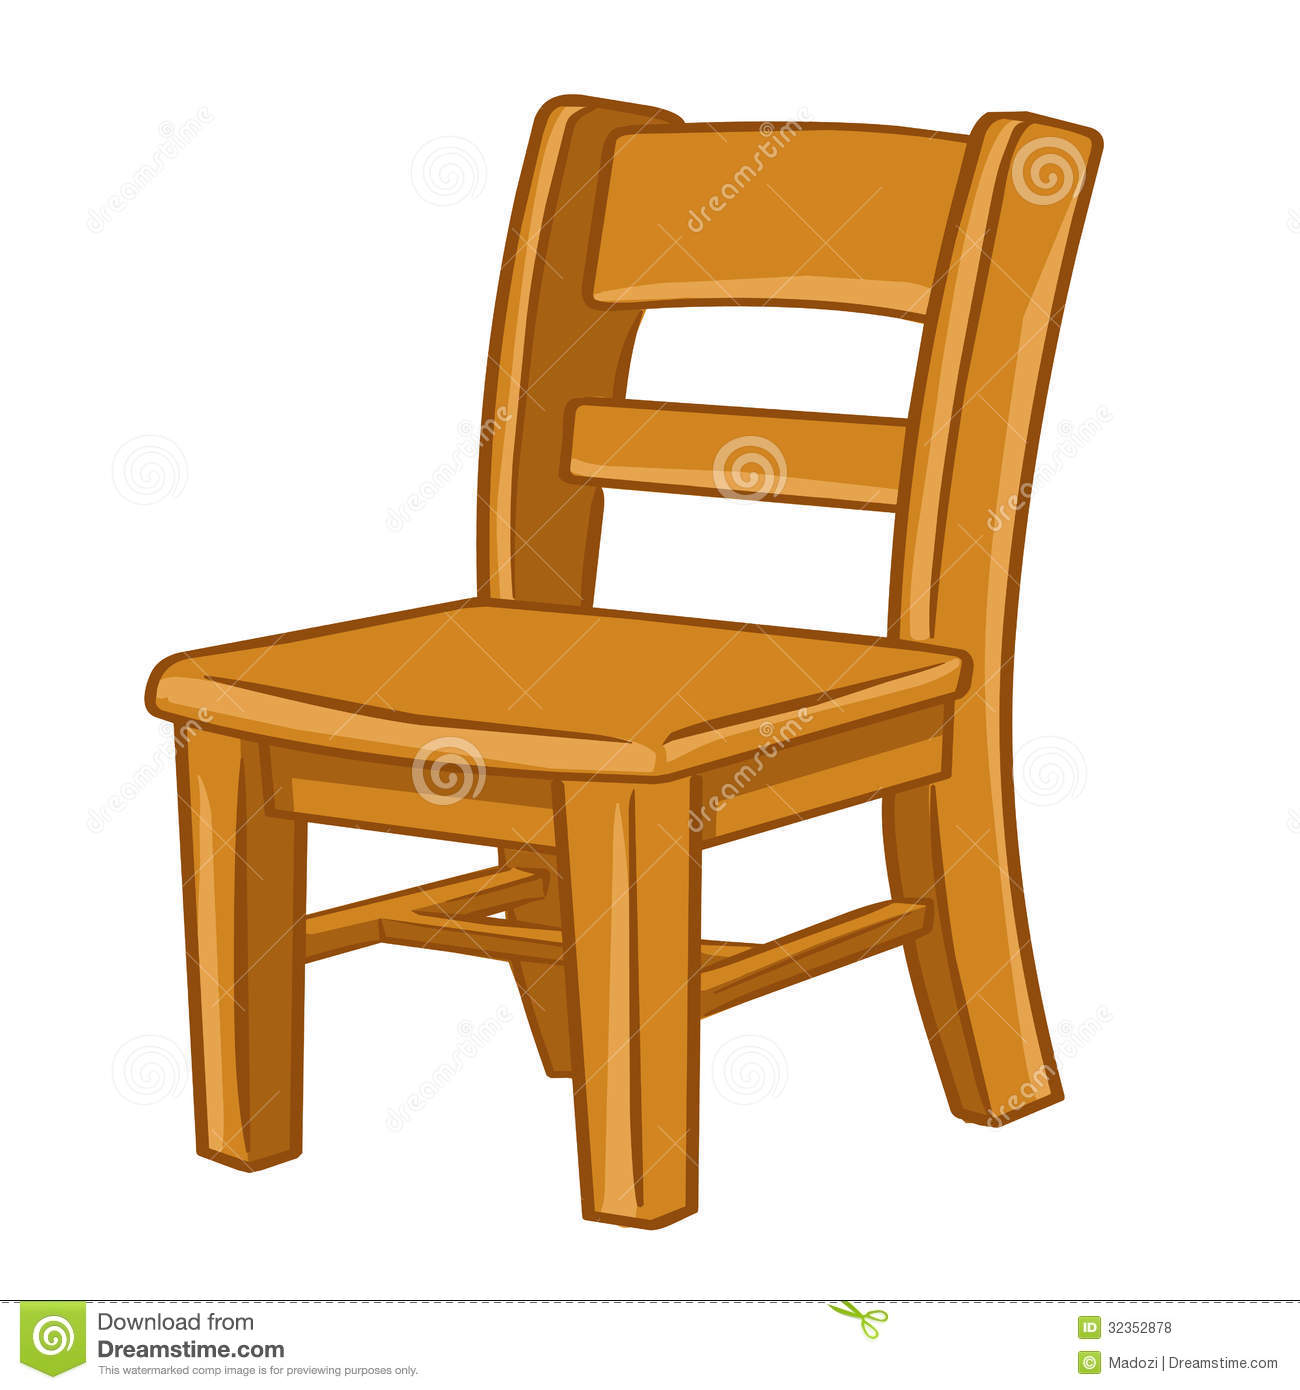 Chair clip art.